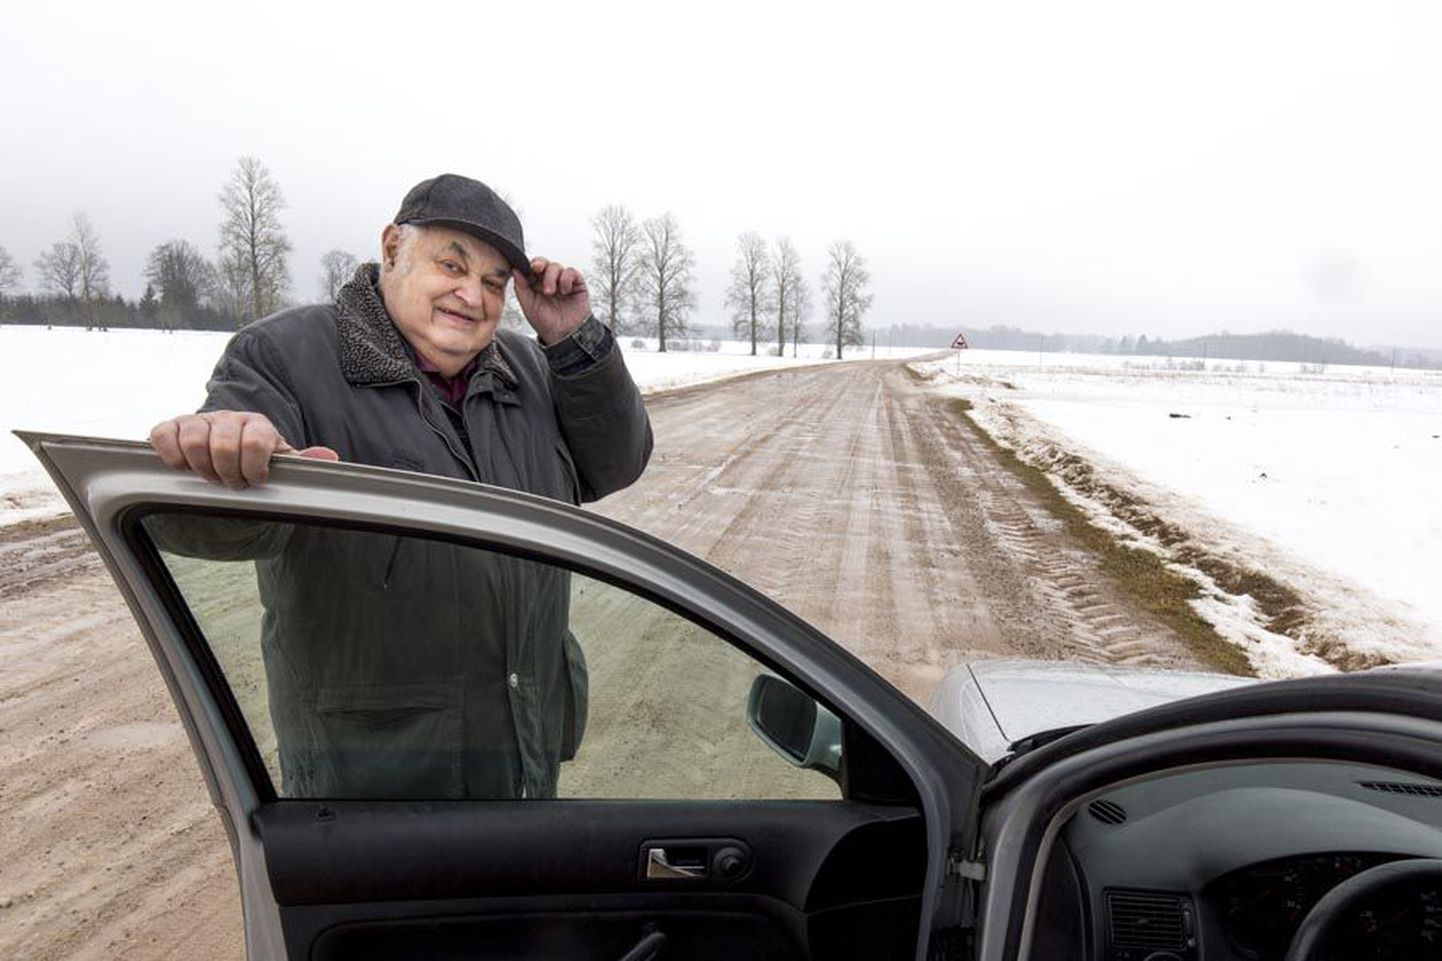 Ako Luts seisab oma autoga Metsküla porisel teel, foto on tehtud mullu märtsis.